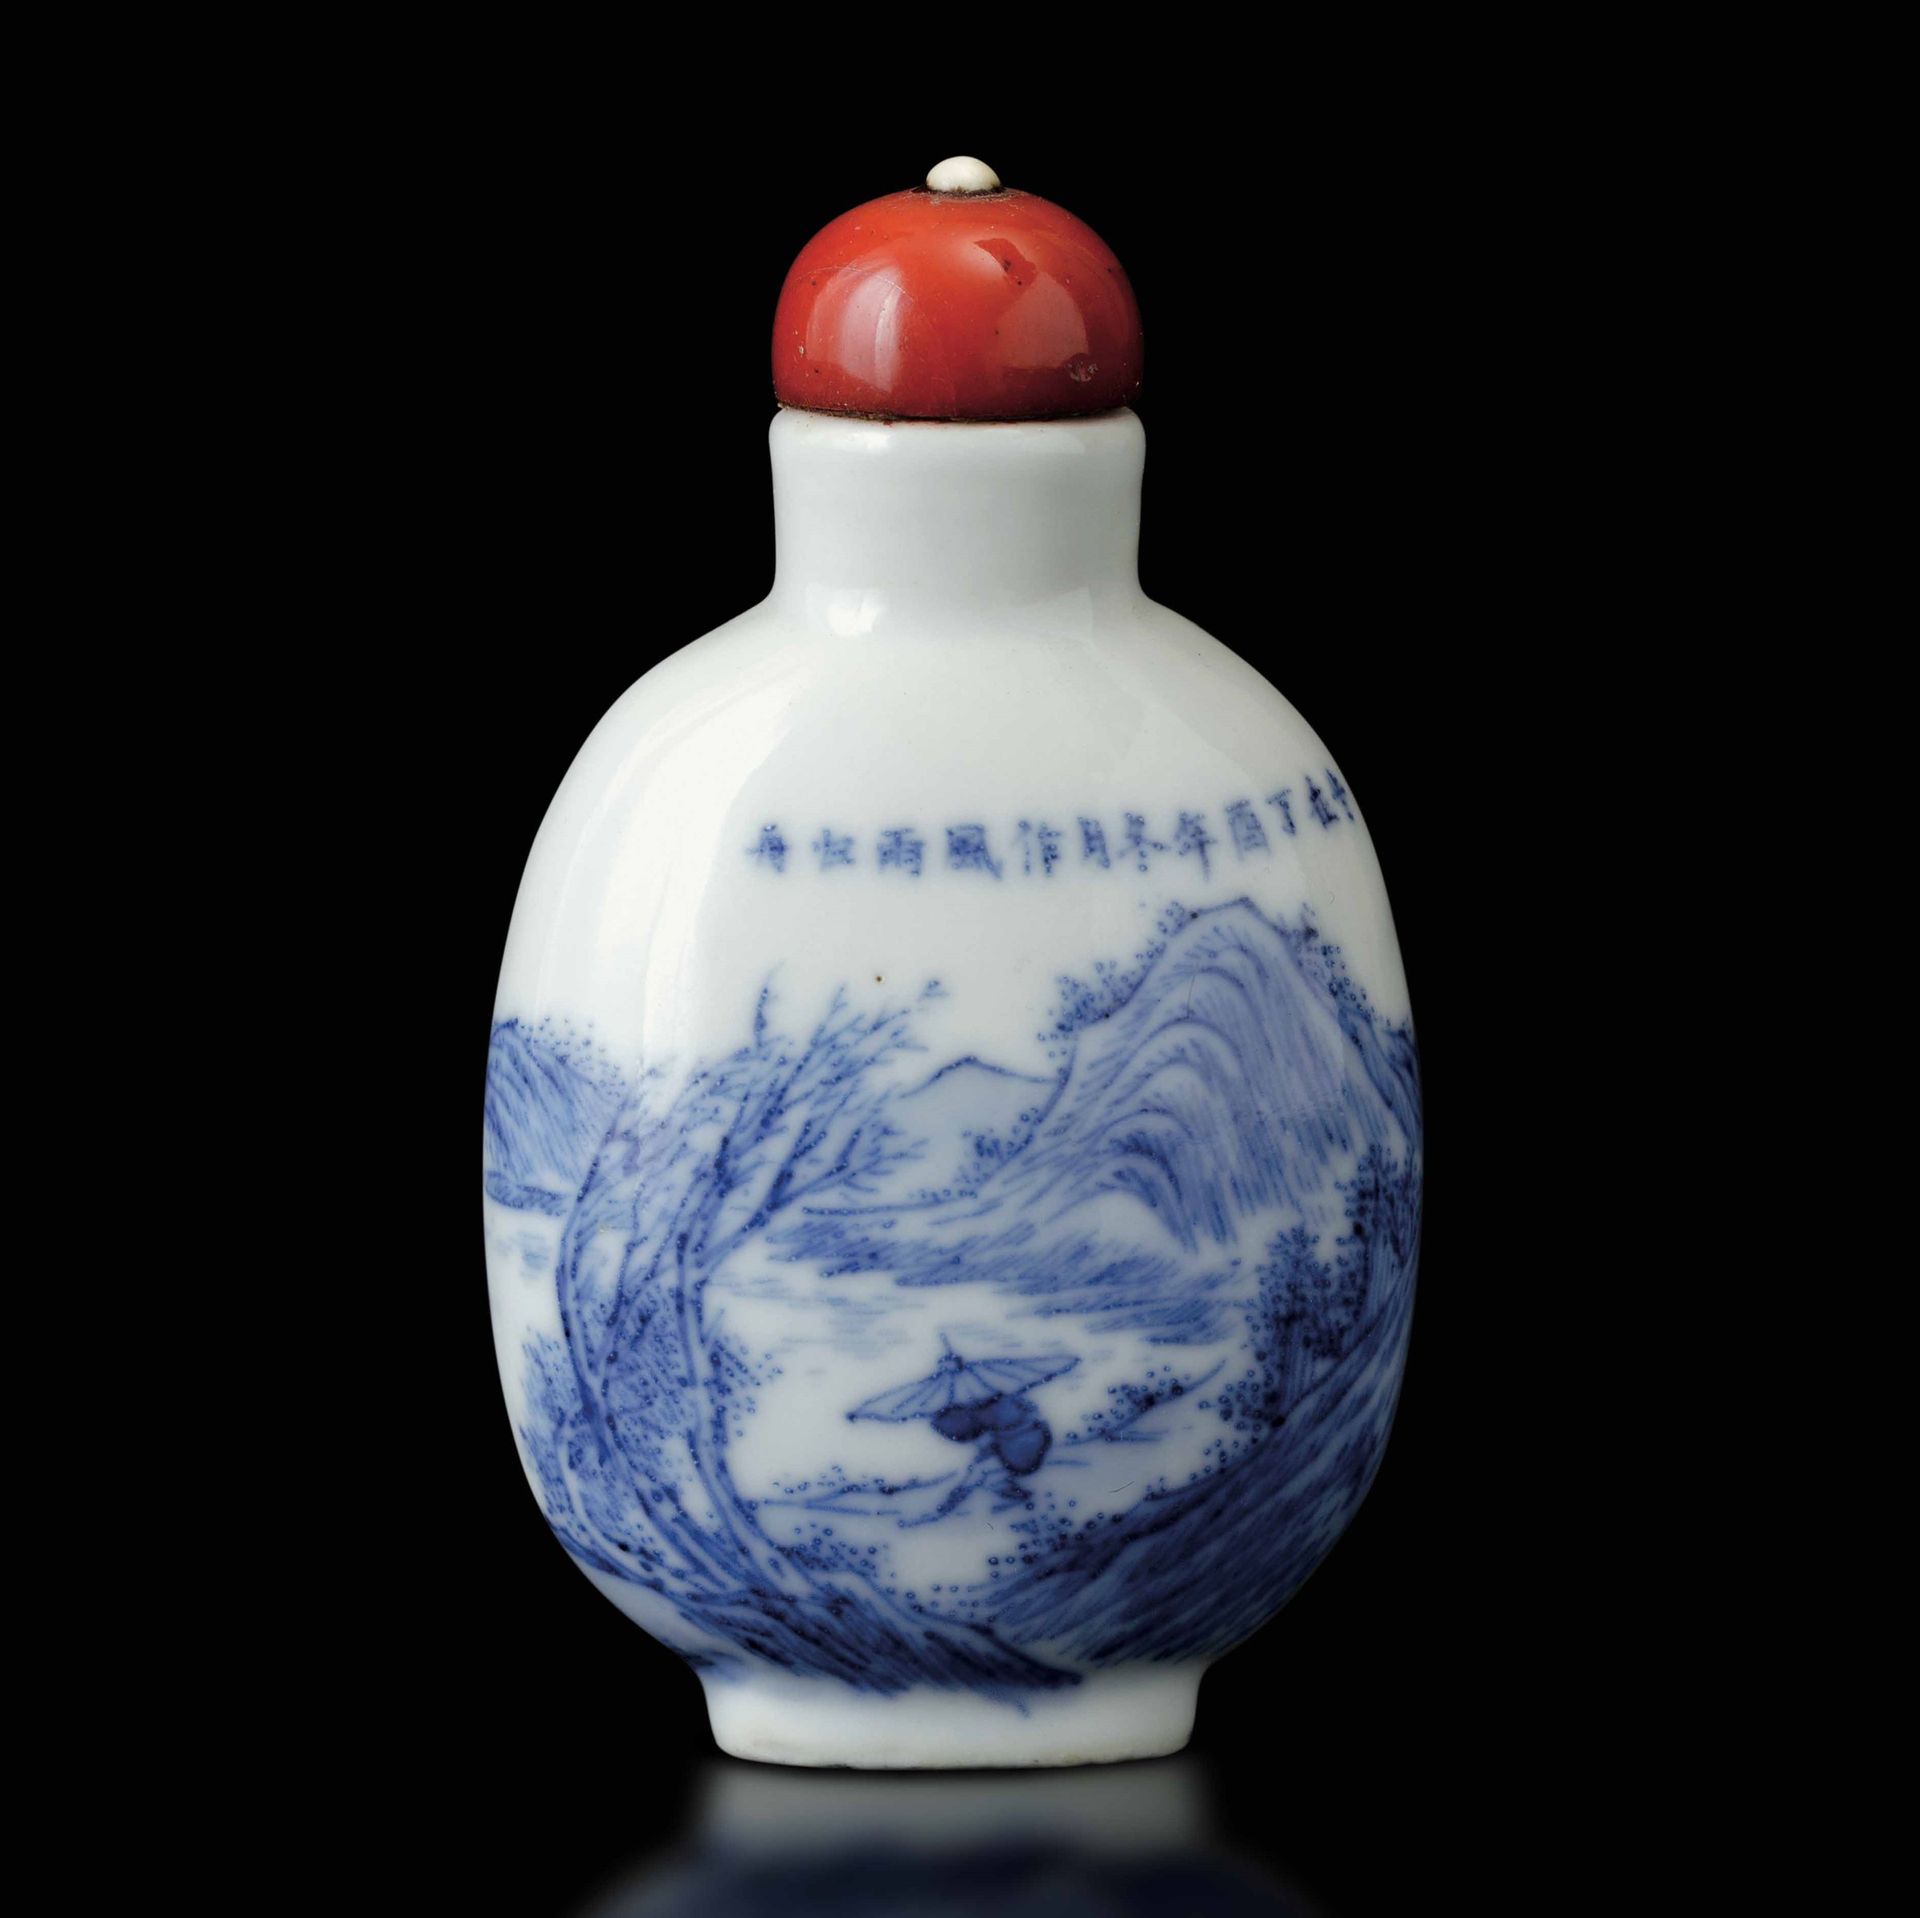 A porcelain snuff bottle, China, Qing Dynasty 19世纪晚期。白色和蓝色的瓷器。高7厘米